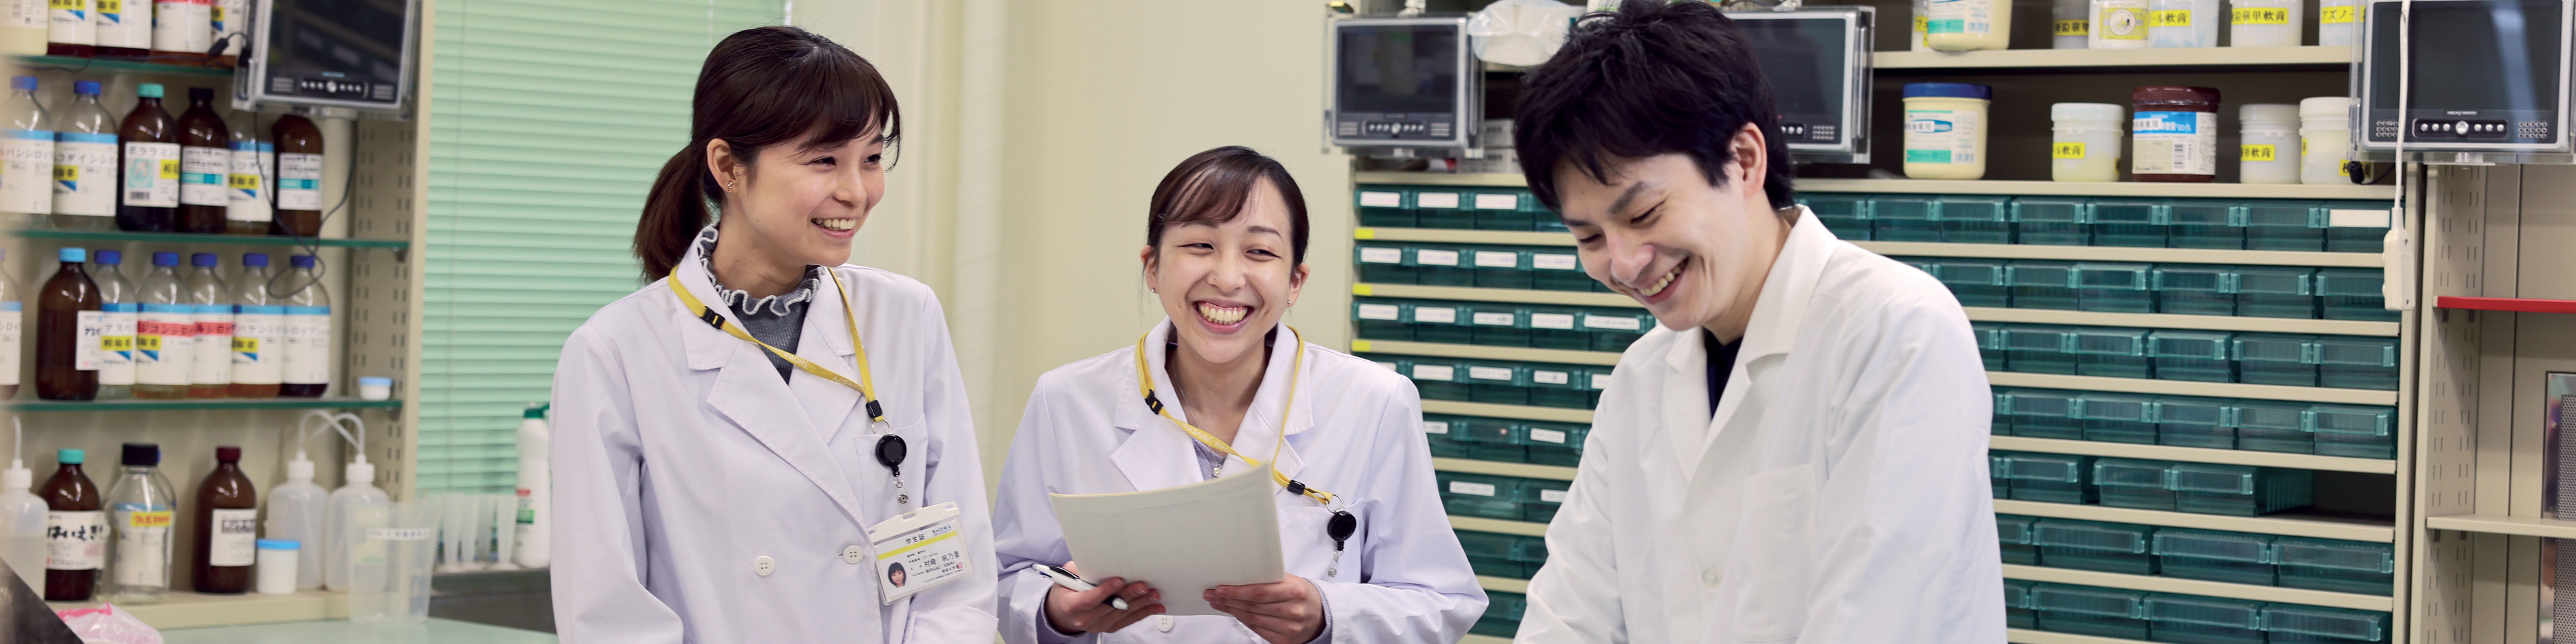 昭和大学、病院薬剤部と薬学部で医薬品情報リソースを活用し、適切な医薬品情報を医療者と患者に提供